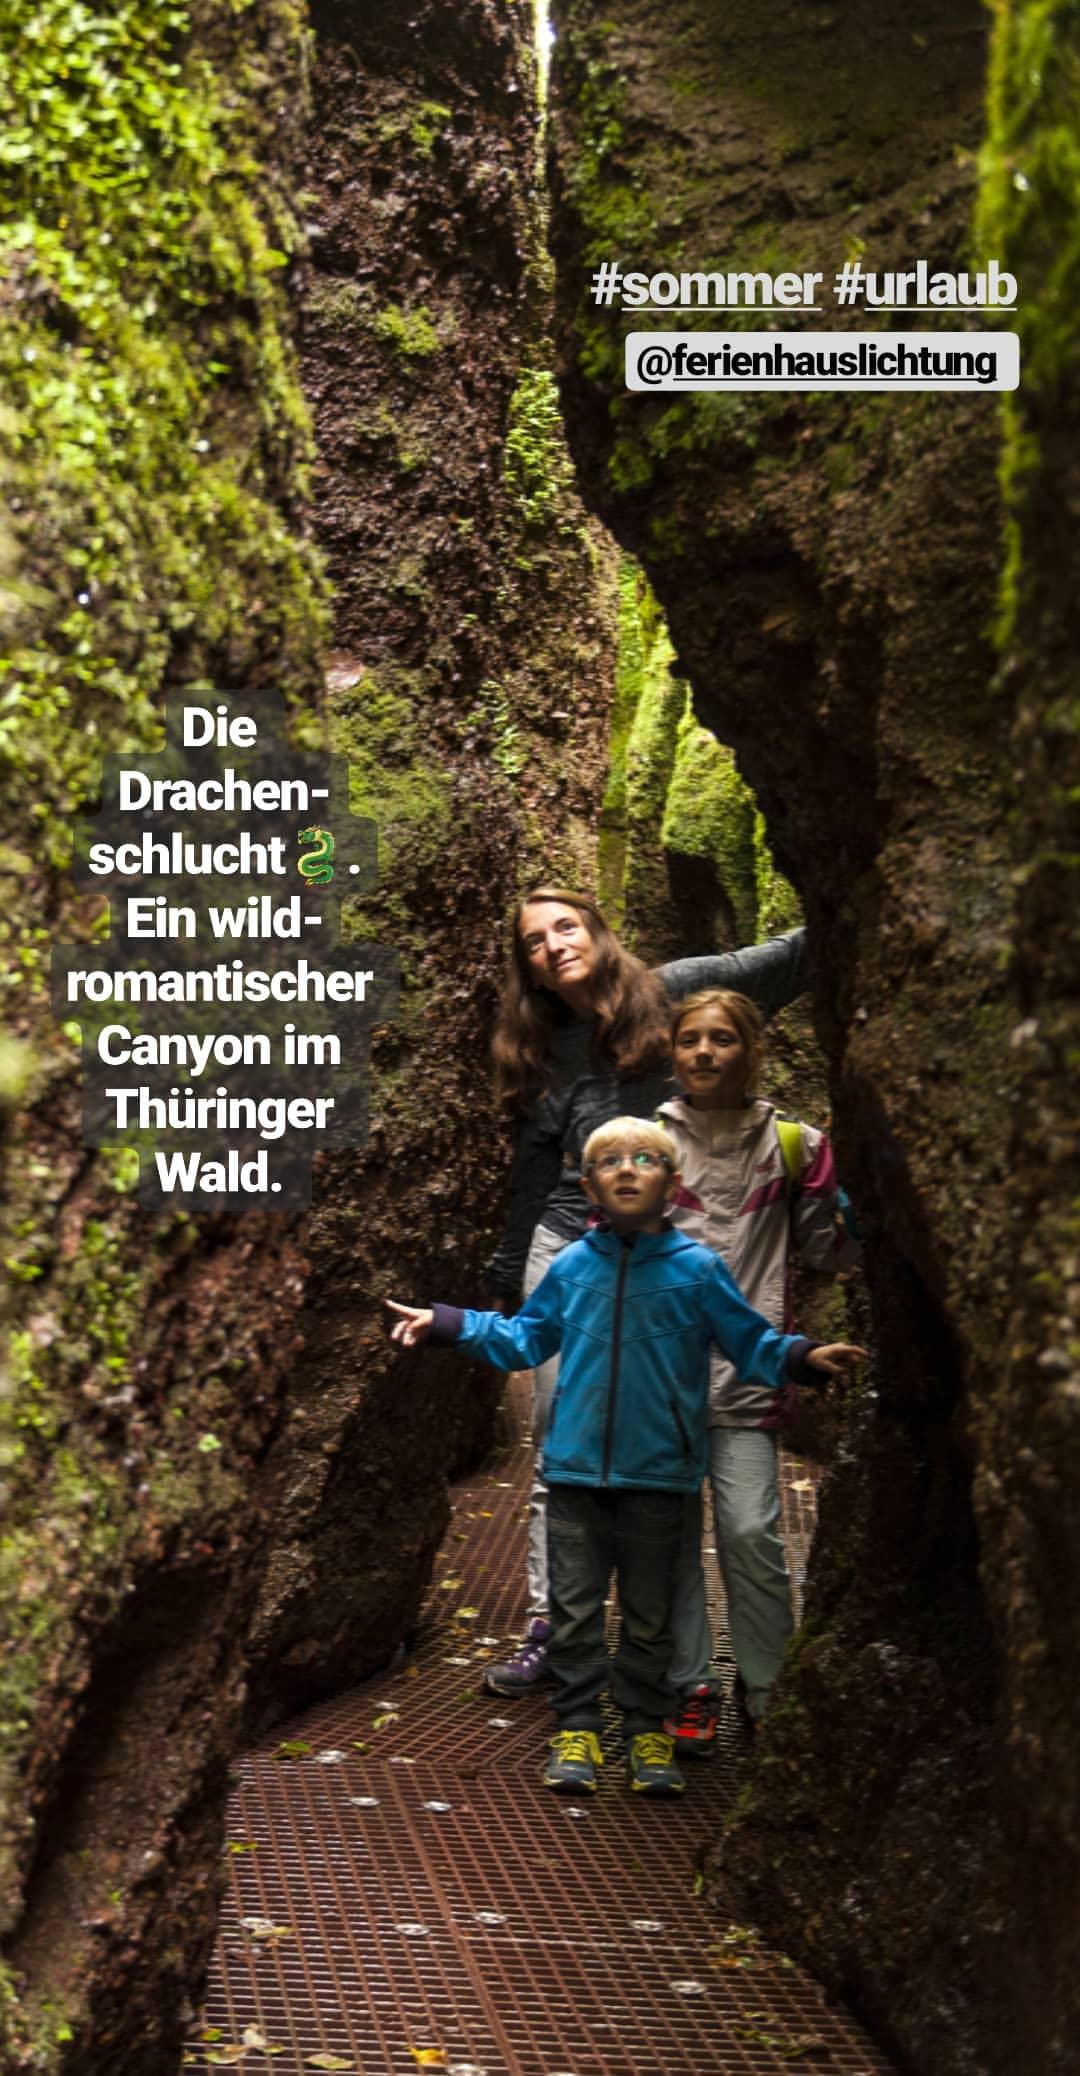 Die Drachenschlucht bei Eisenach. Ein wildromantischer Canyon im Thüringer Wald bei der Ferienhaus Lichtung